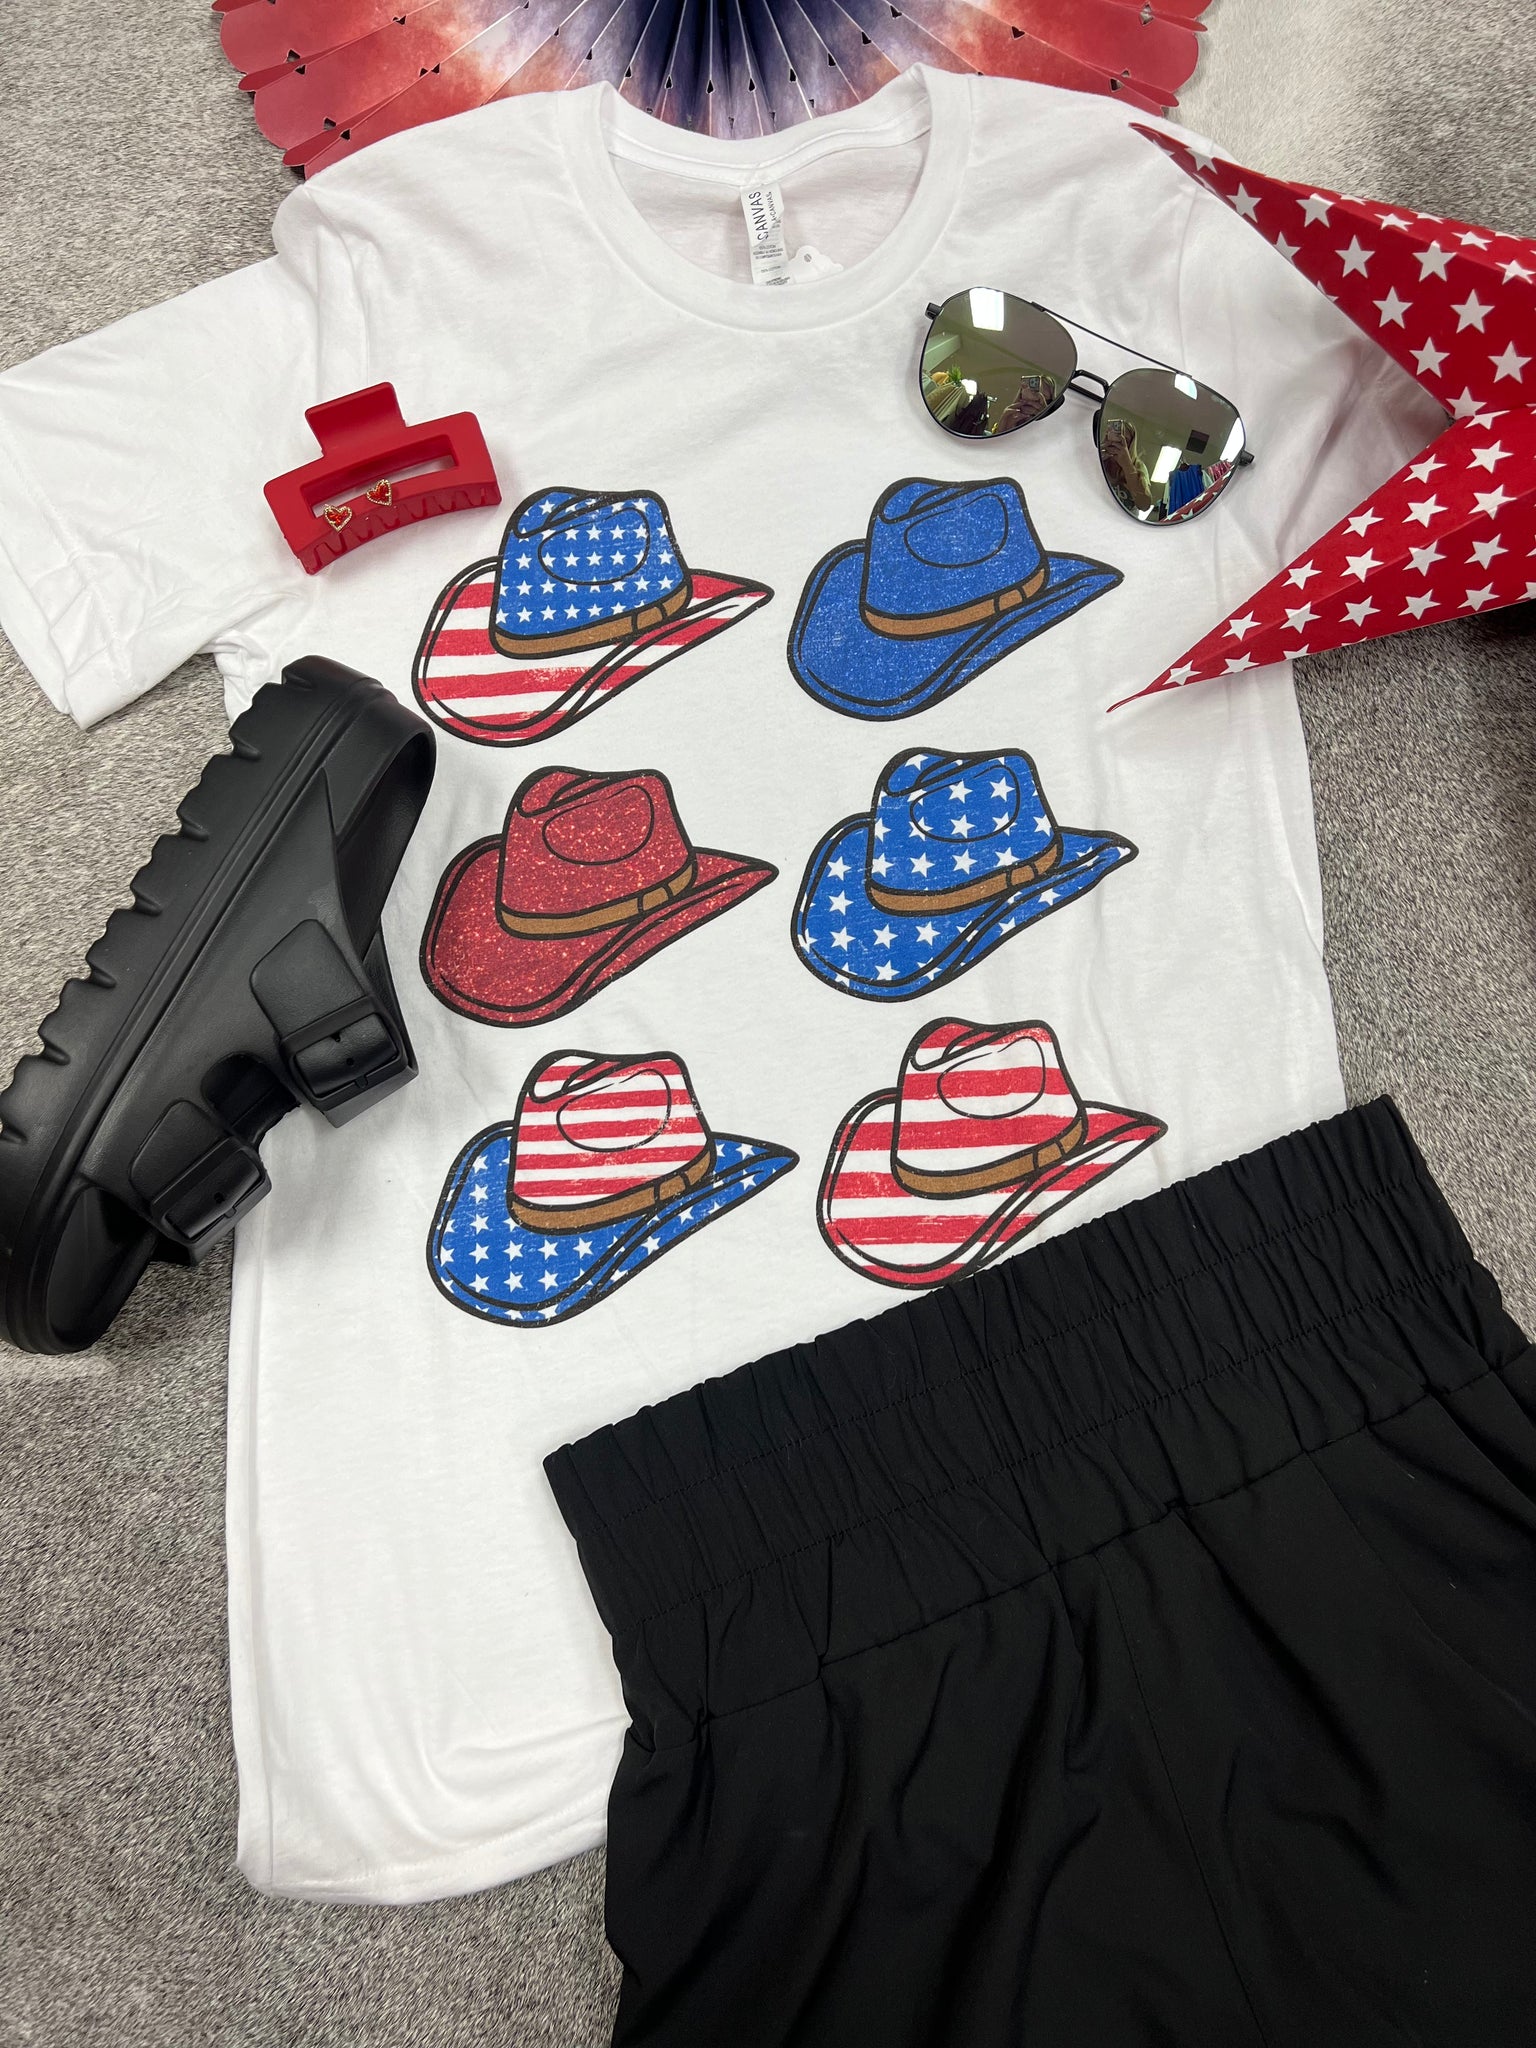 America Graphic T-Shirt